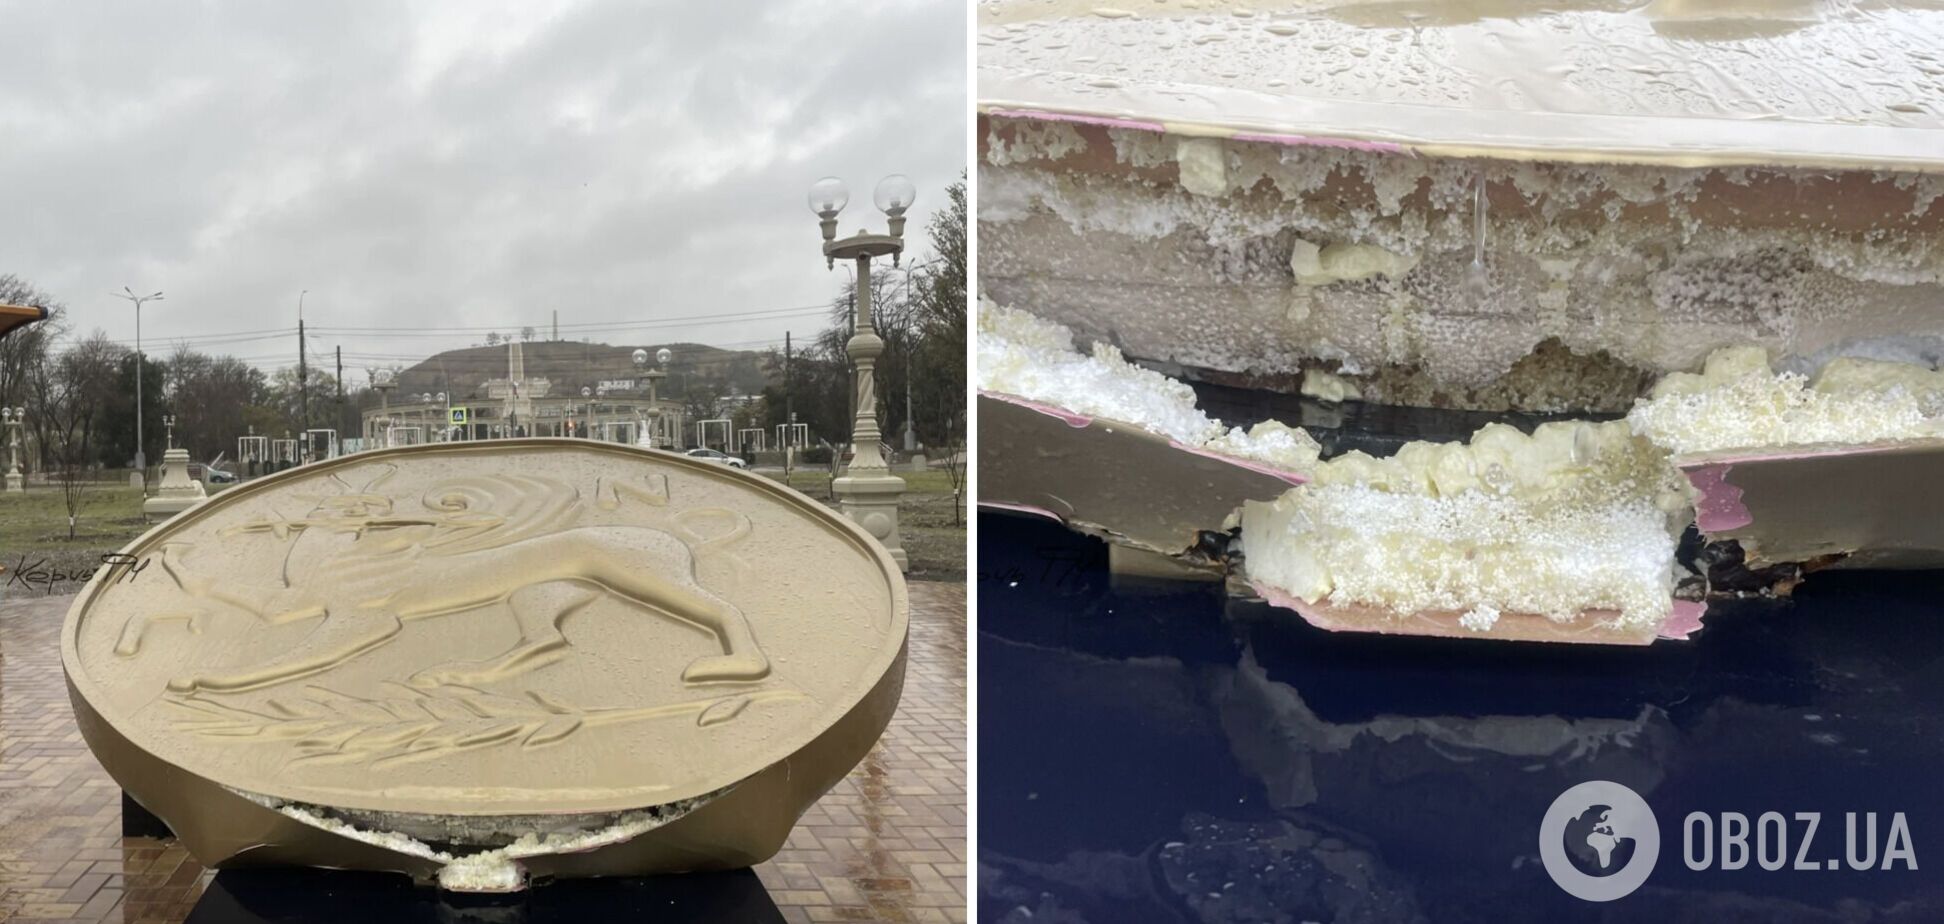 Оказался из пенопласта и пластмассы: в Керчи шторм разрушил памятник, на который оккупанты потратили более миллиона рублей. Фото